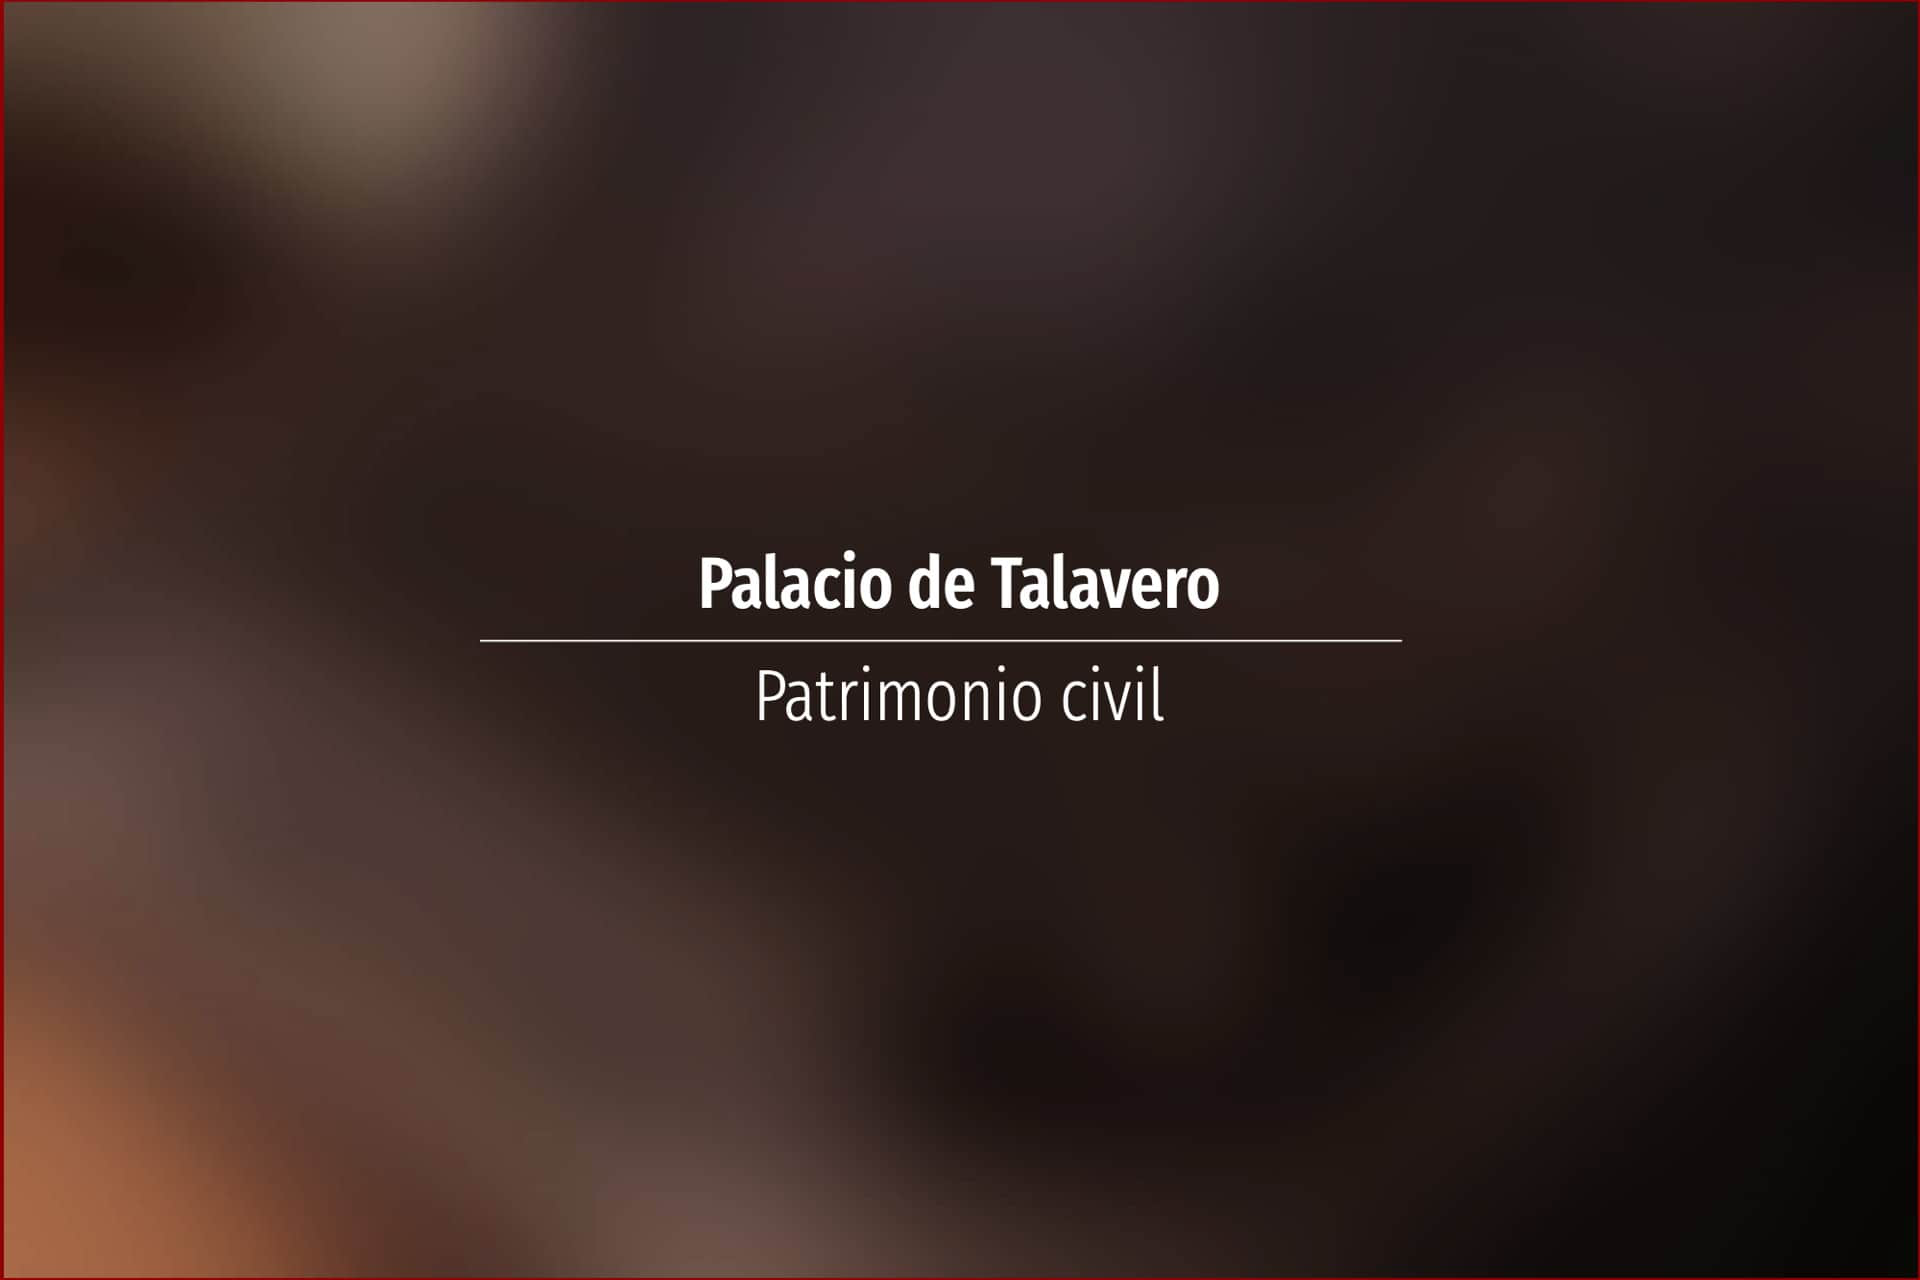 Palacio de Talavero